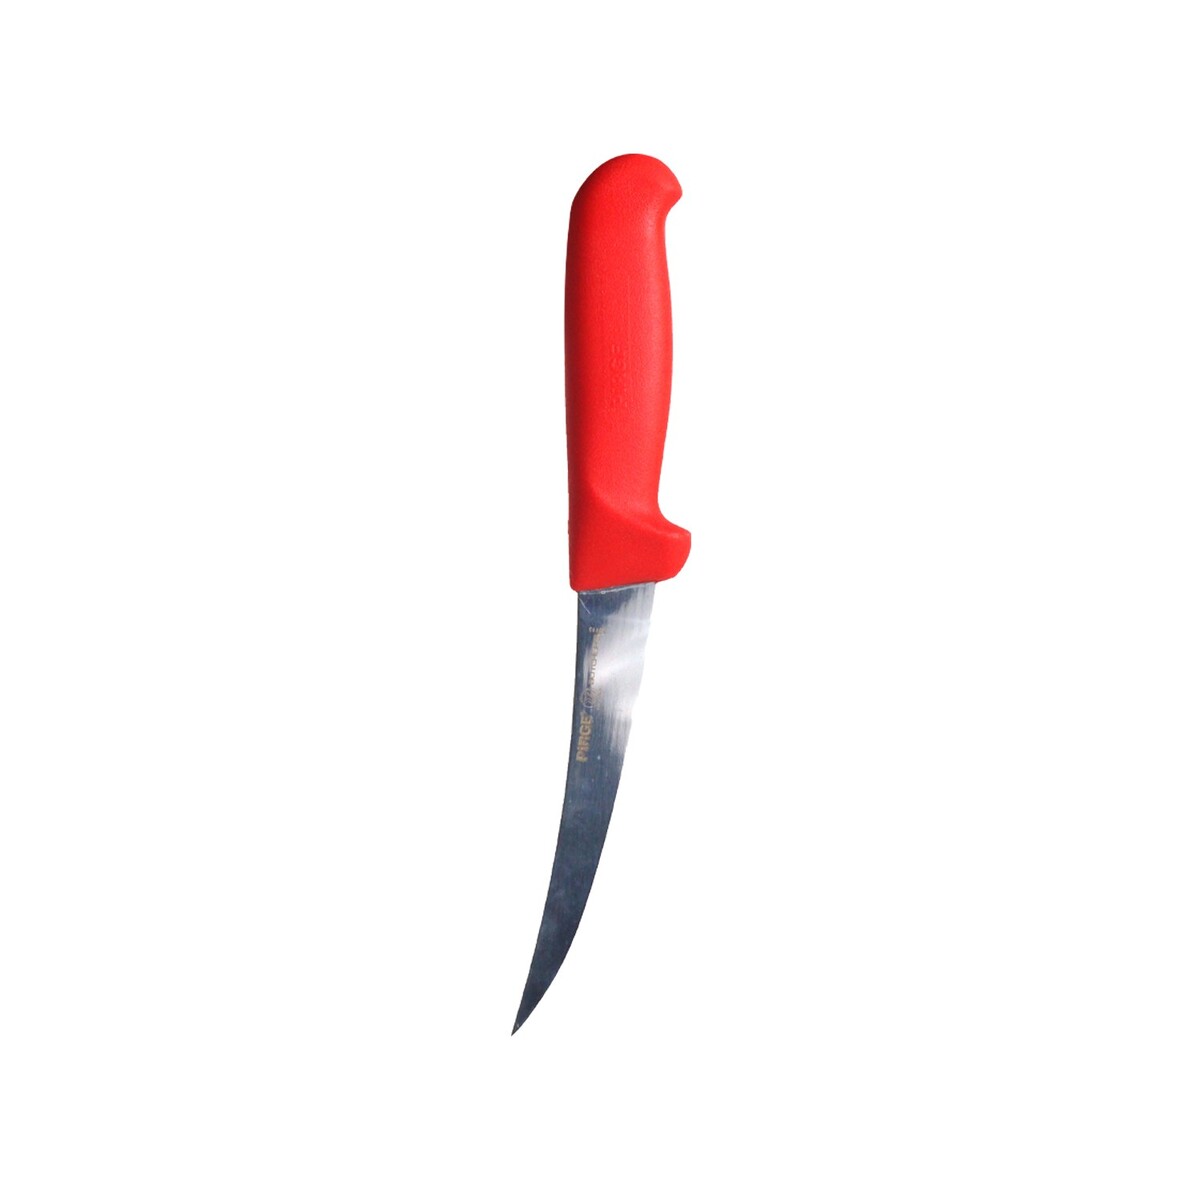 Pirge Butcher's Boning Knife Hard 39115 Assorted 15cm